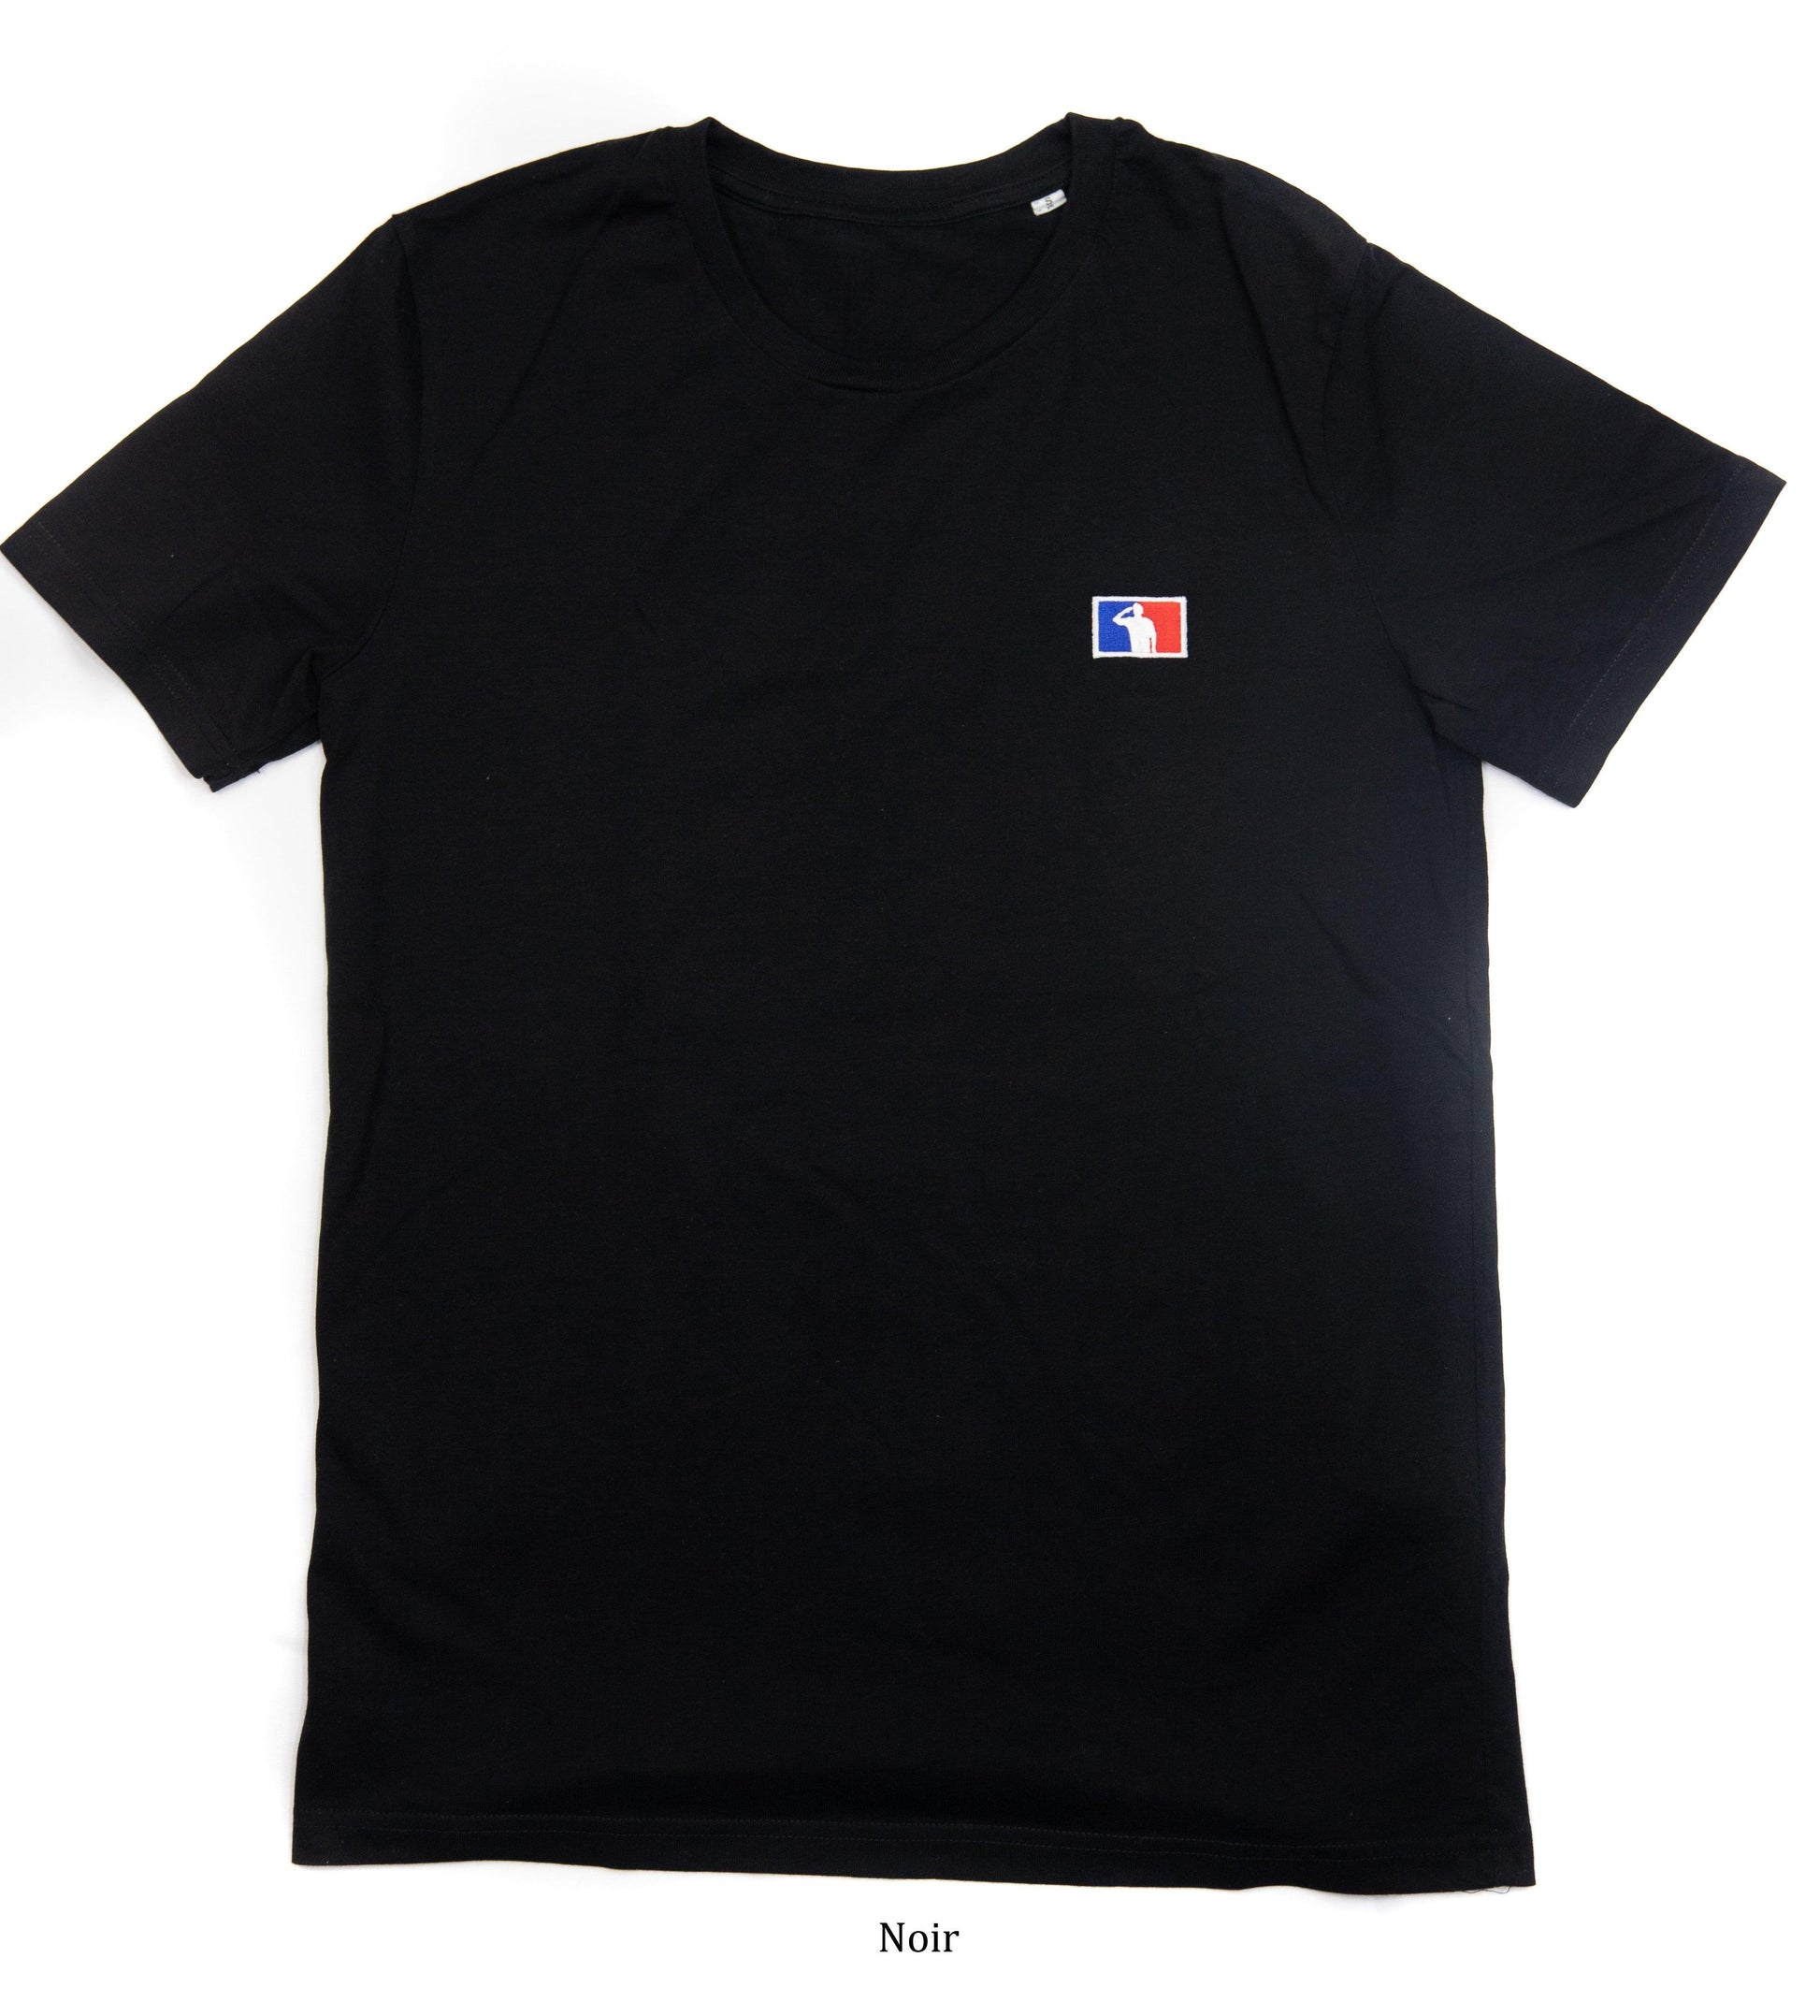 T-shirt Bio / brodé - Gamme civile - Le T-shirt du Caporal